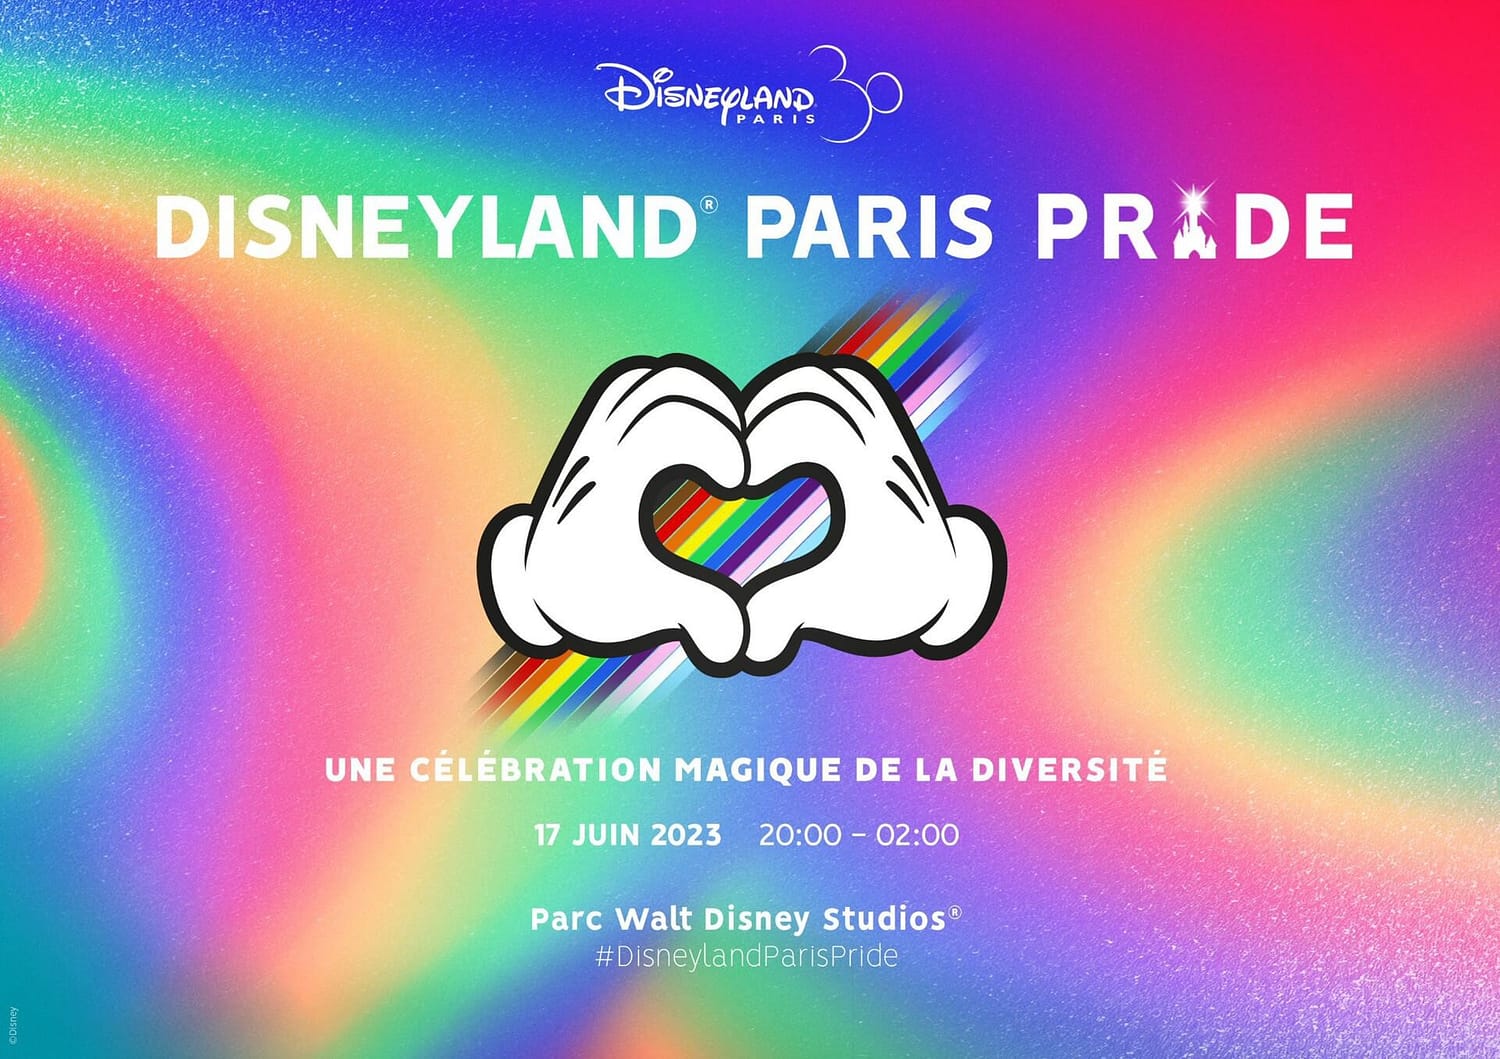 Disneyland® Paris Pride, la célébration magique de la diversité aura lieu le 17 juin 2023 !